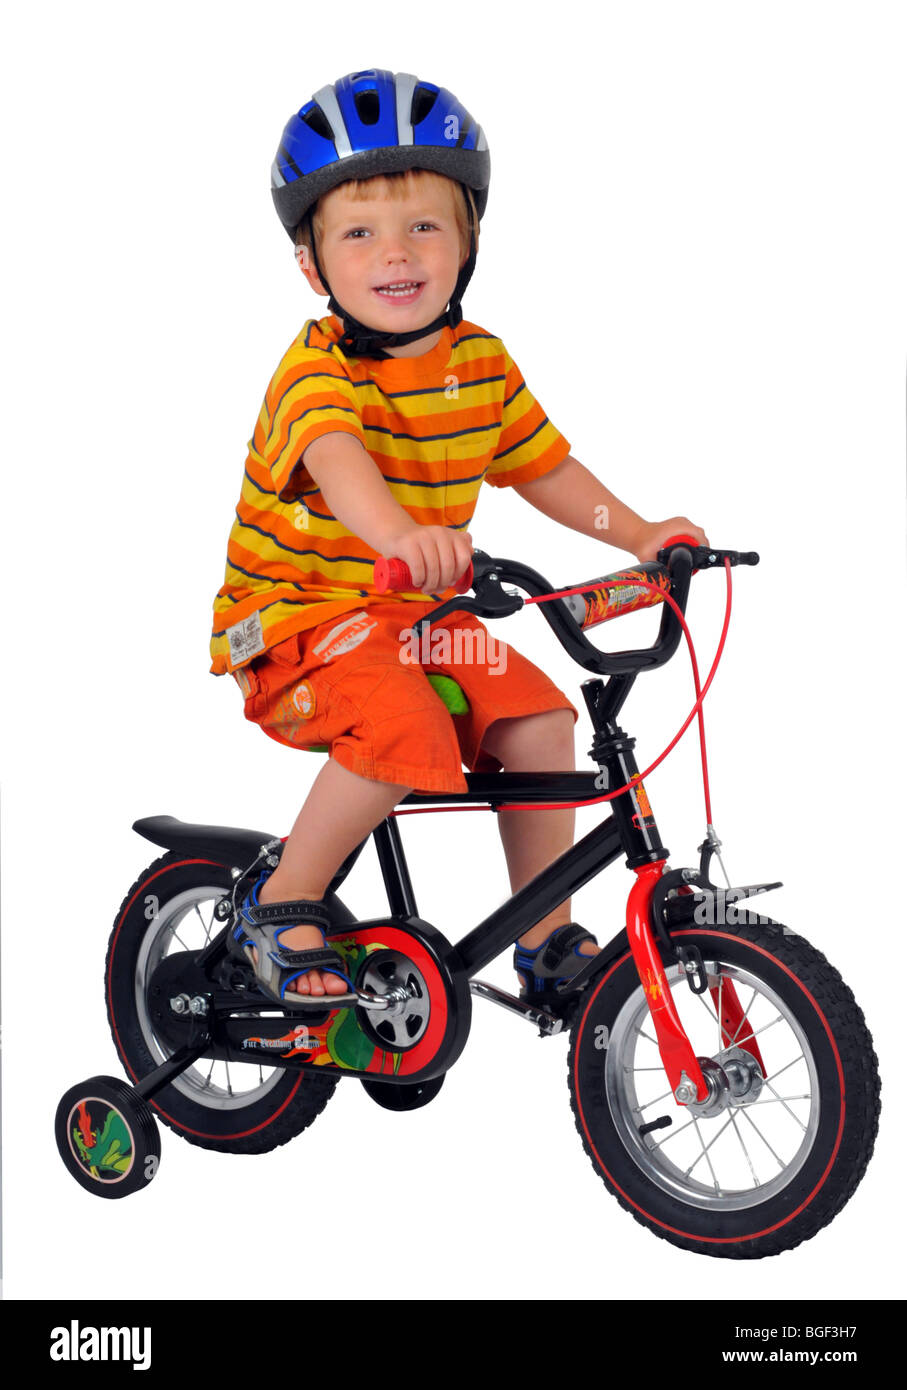 Garçon sur un vélo avec stabilisateurs, vélo avec stabilisateur, l'apprentissage de l'enfant à faire du vélo avec stabilisateurs, apprendre à randonnée Banque D'Images